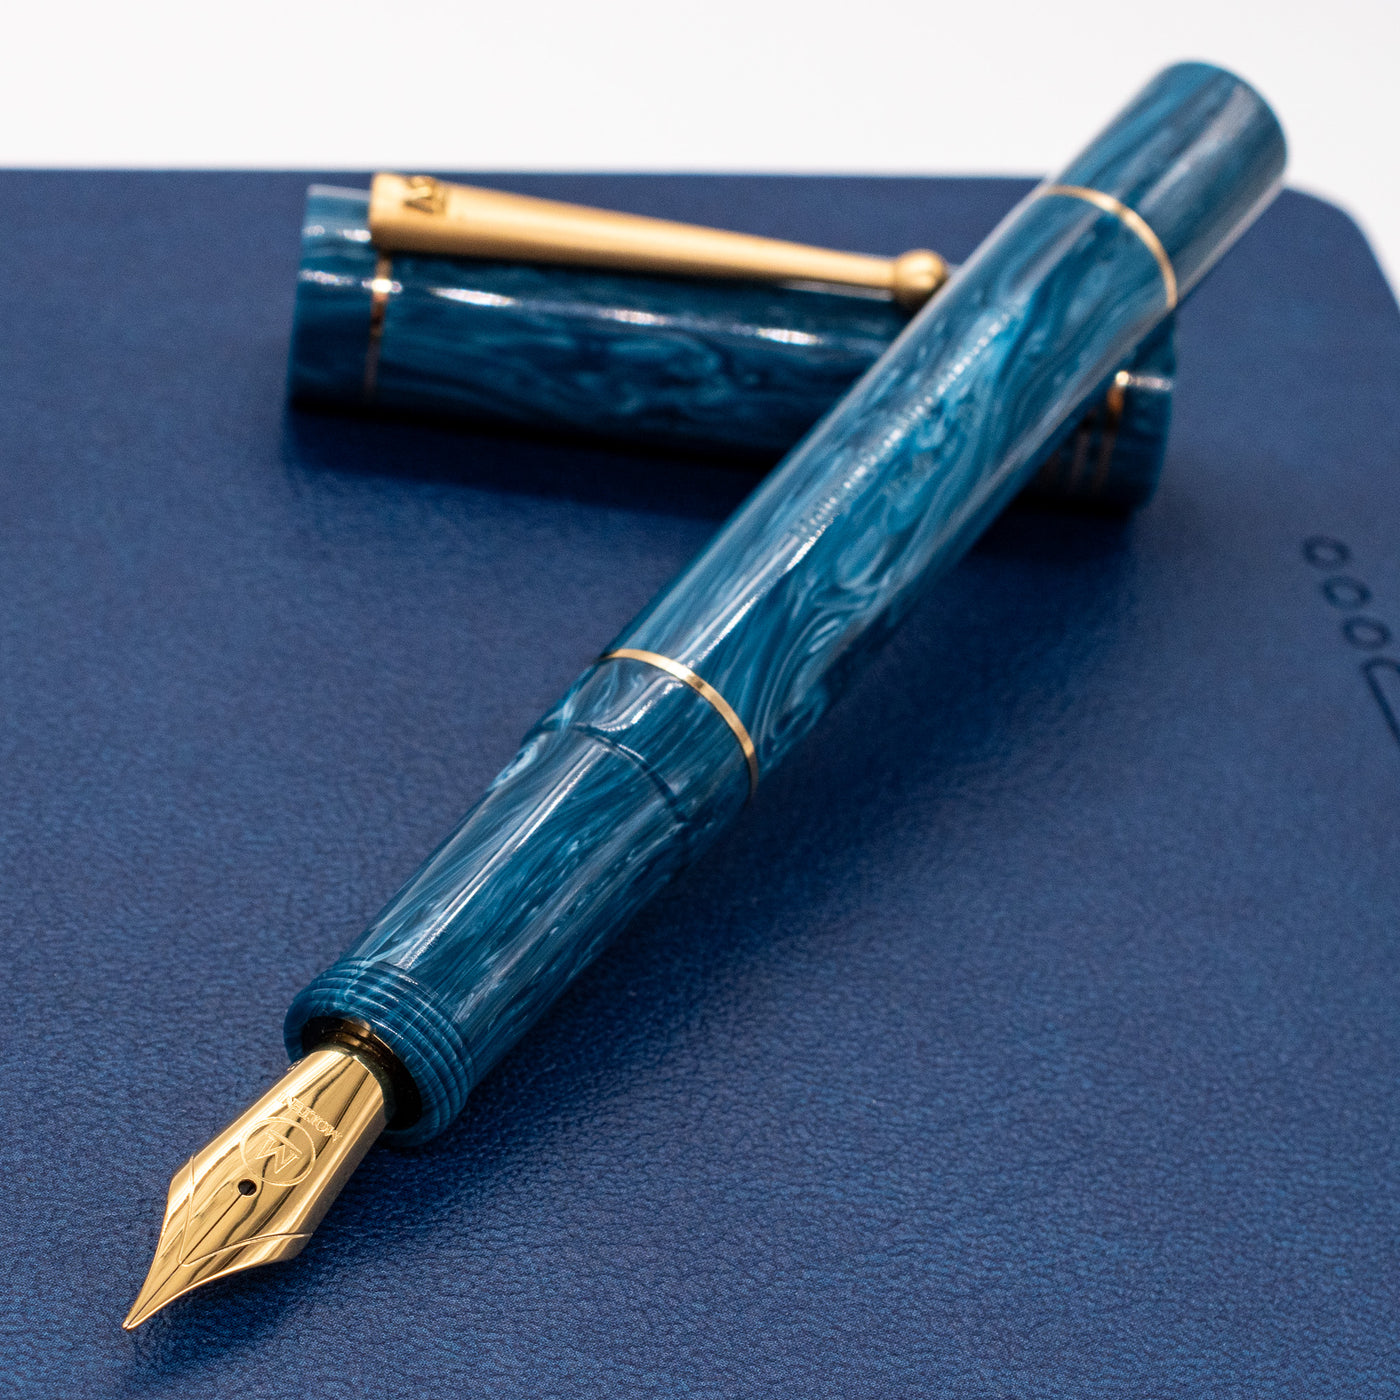 Molteni Modelo 88 Fountain Pen - Capri Blue uncapped